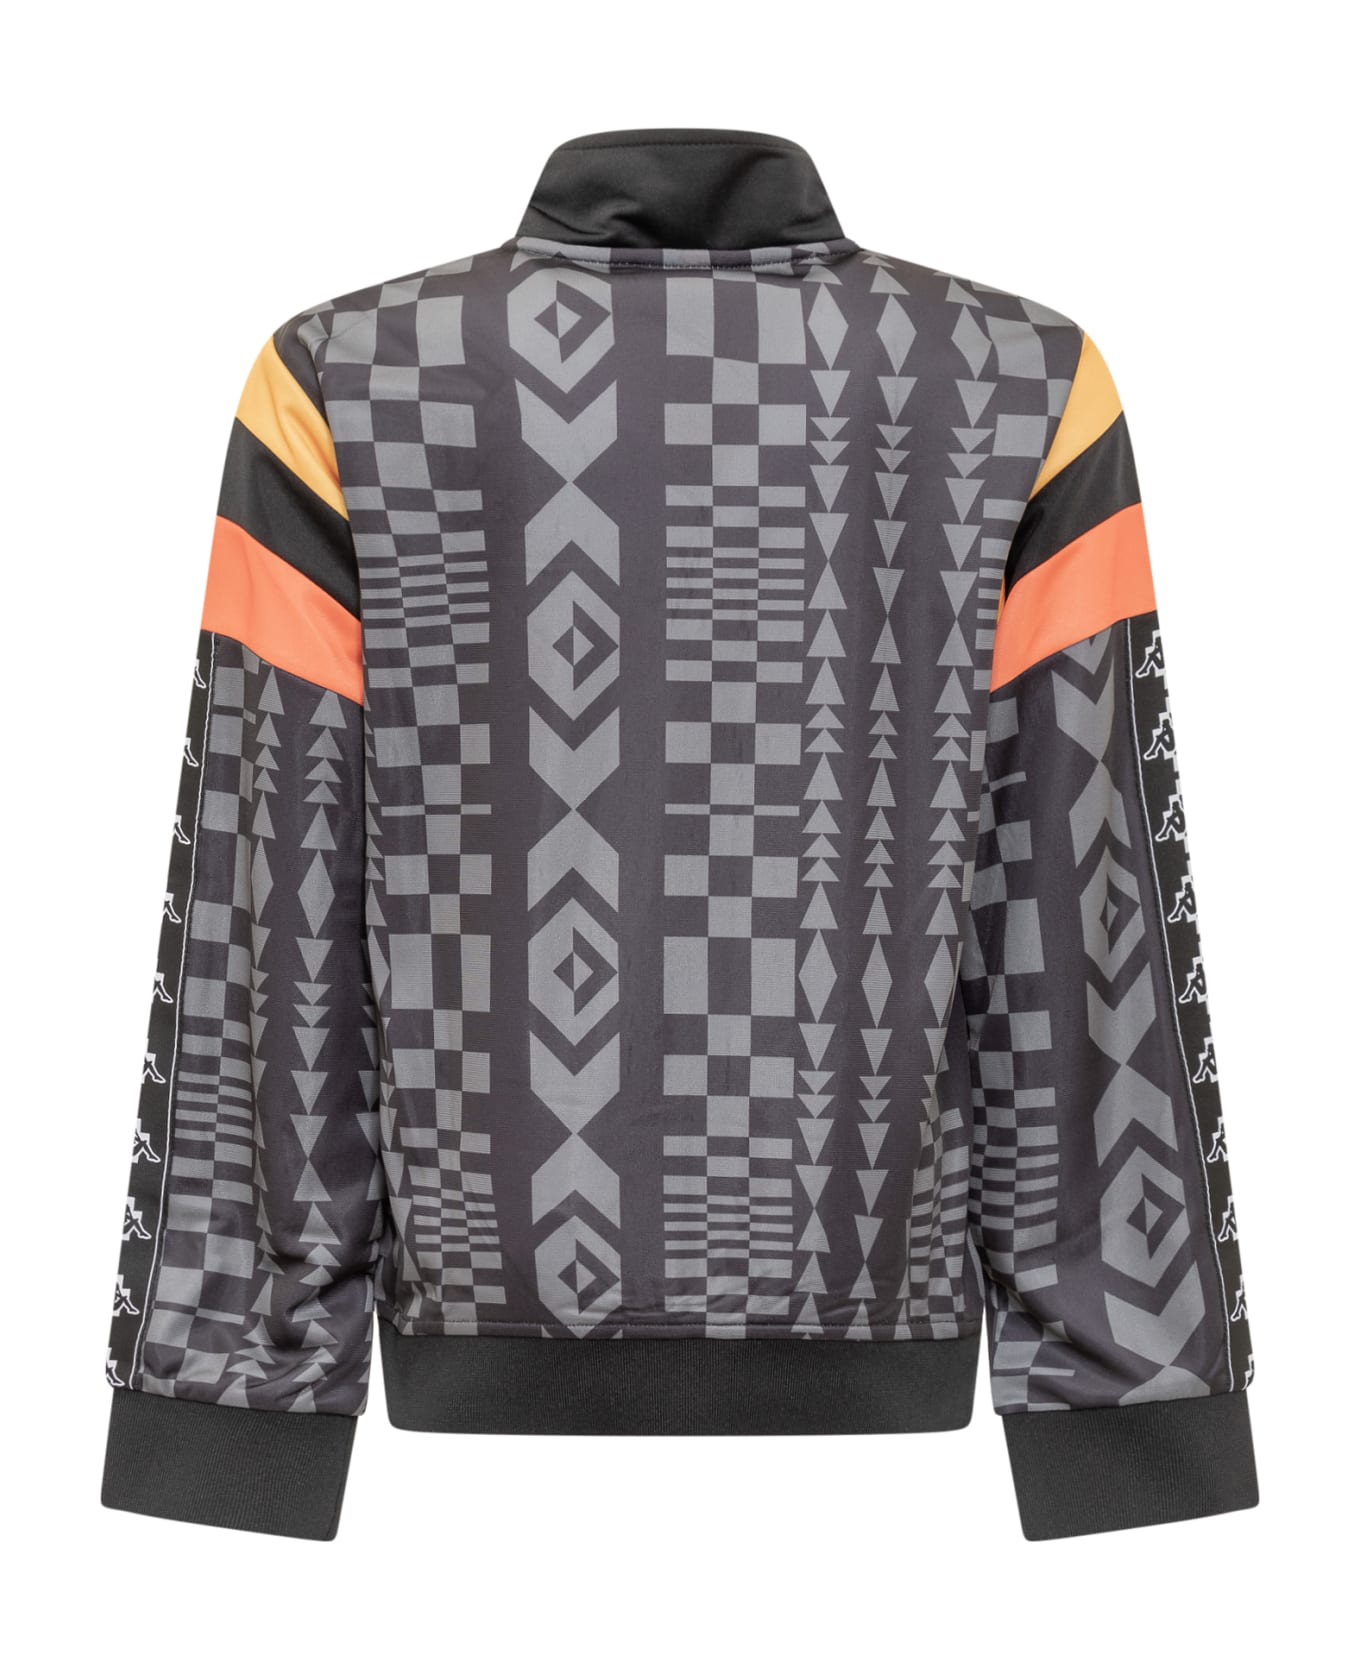 Marcelo Burlon X Kappa Sweatshirt With Zip - BLACK DARK